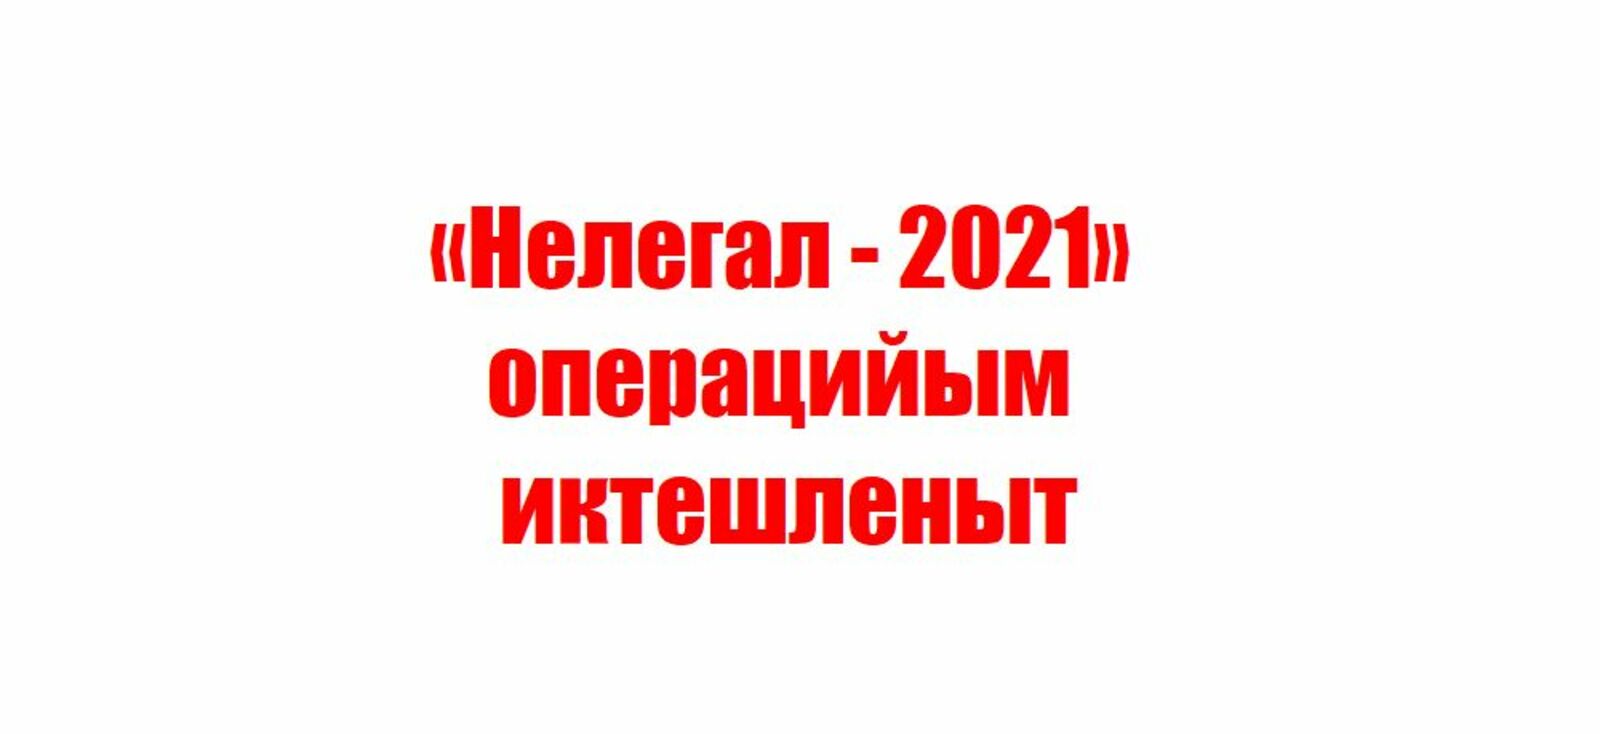 «Нелегал - 2021» операцийым иктешленыт